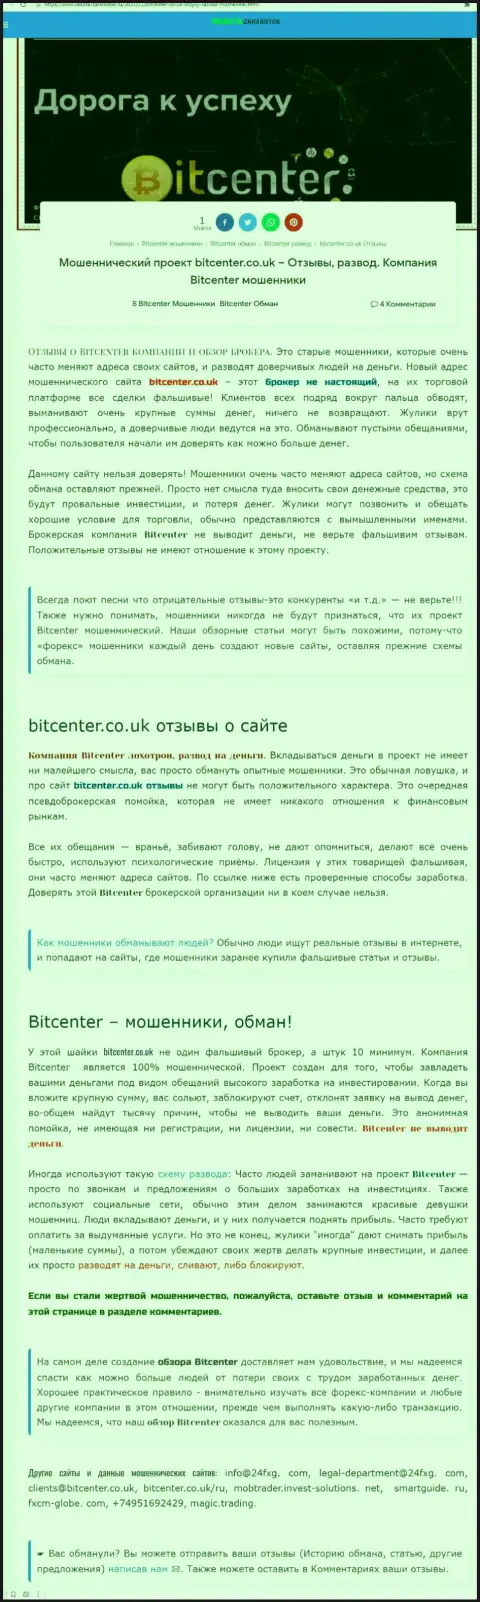 BitCenter Co Uk - это контора, совместное сотрудничество с которой приносит только лишь потери (обзор)